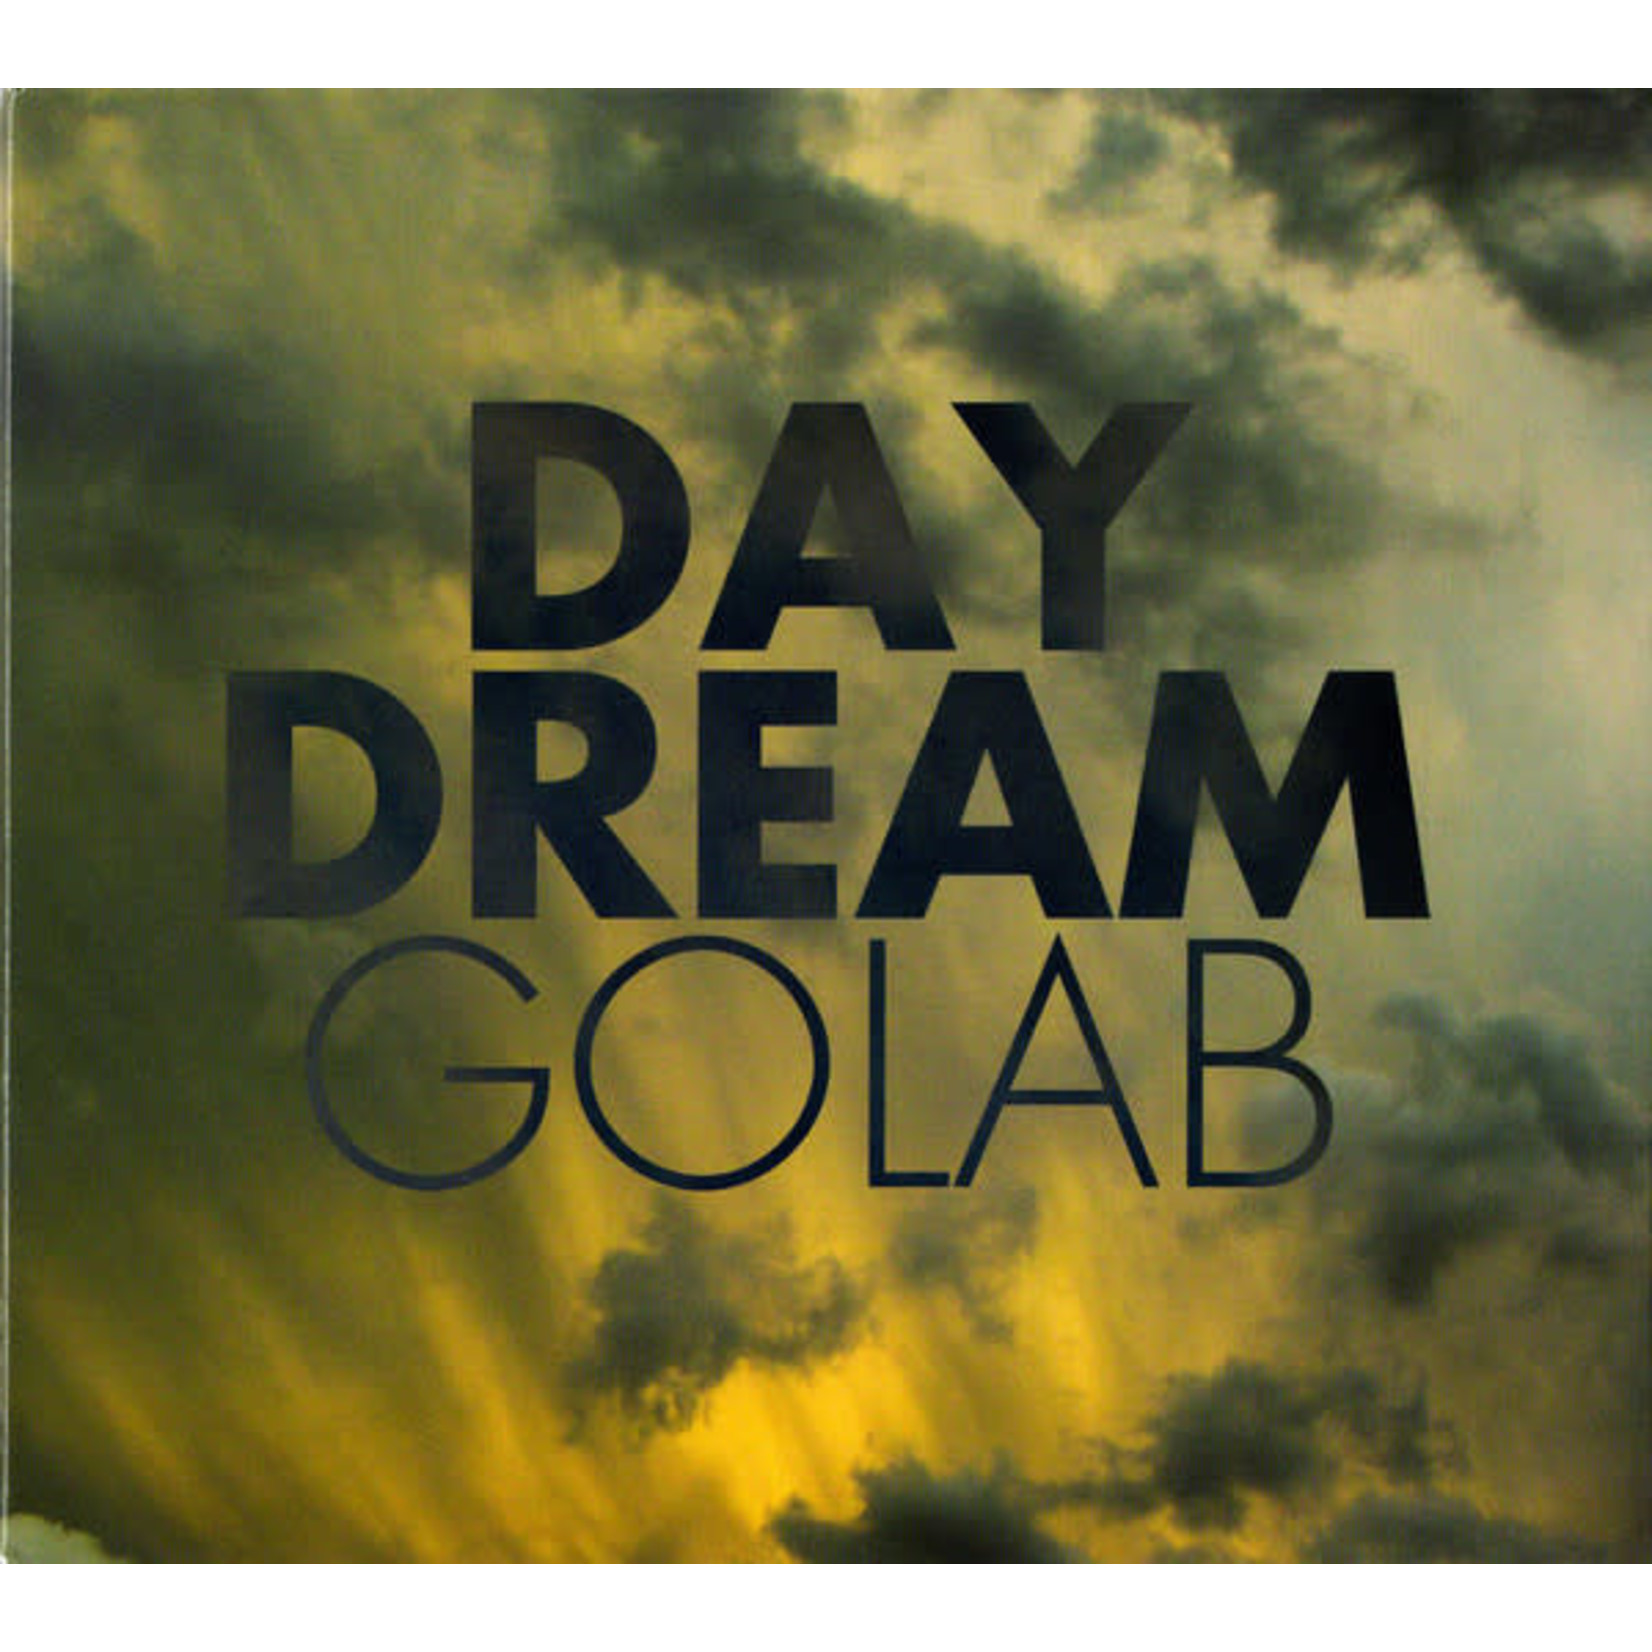 Toledo Golab - Day Dream (CD) [2011]